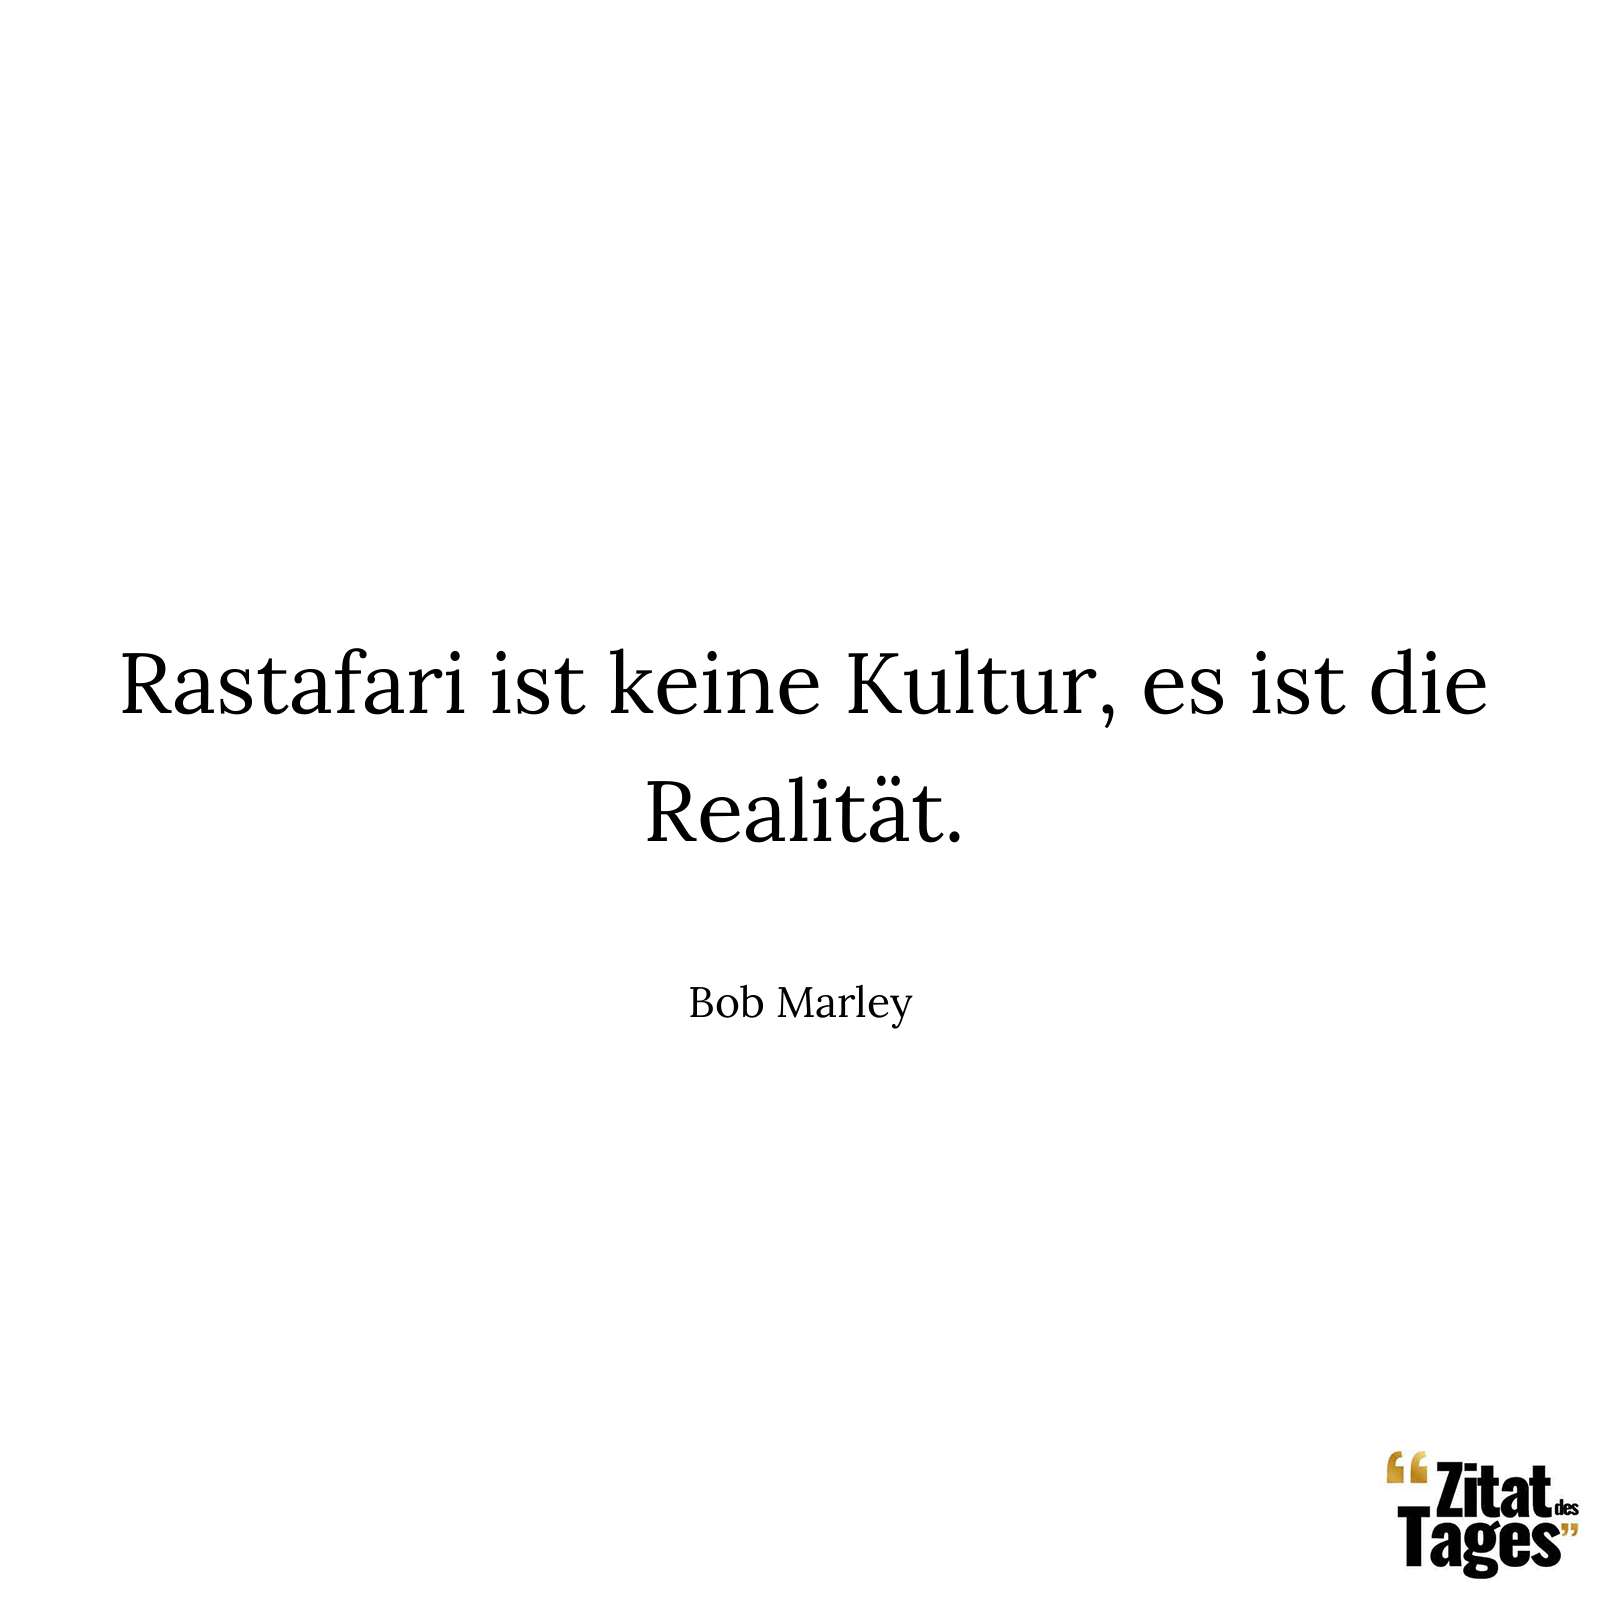 Rastafari ist keine Kultur, es ist die Realität. - Bob Marley